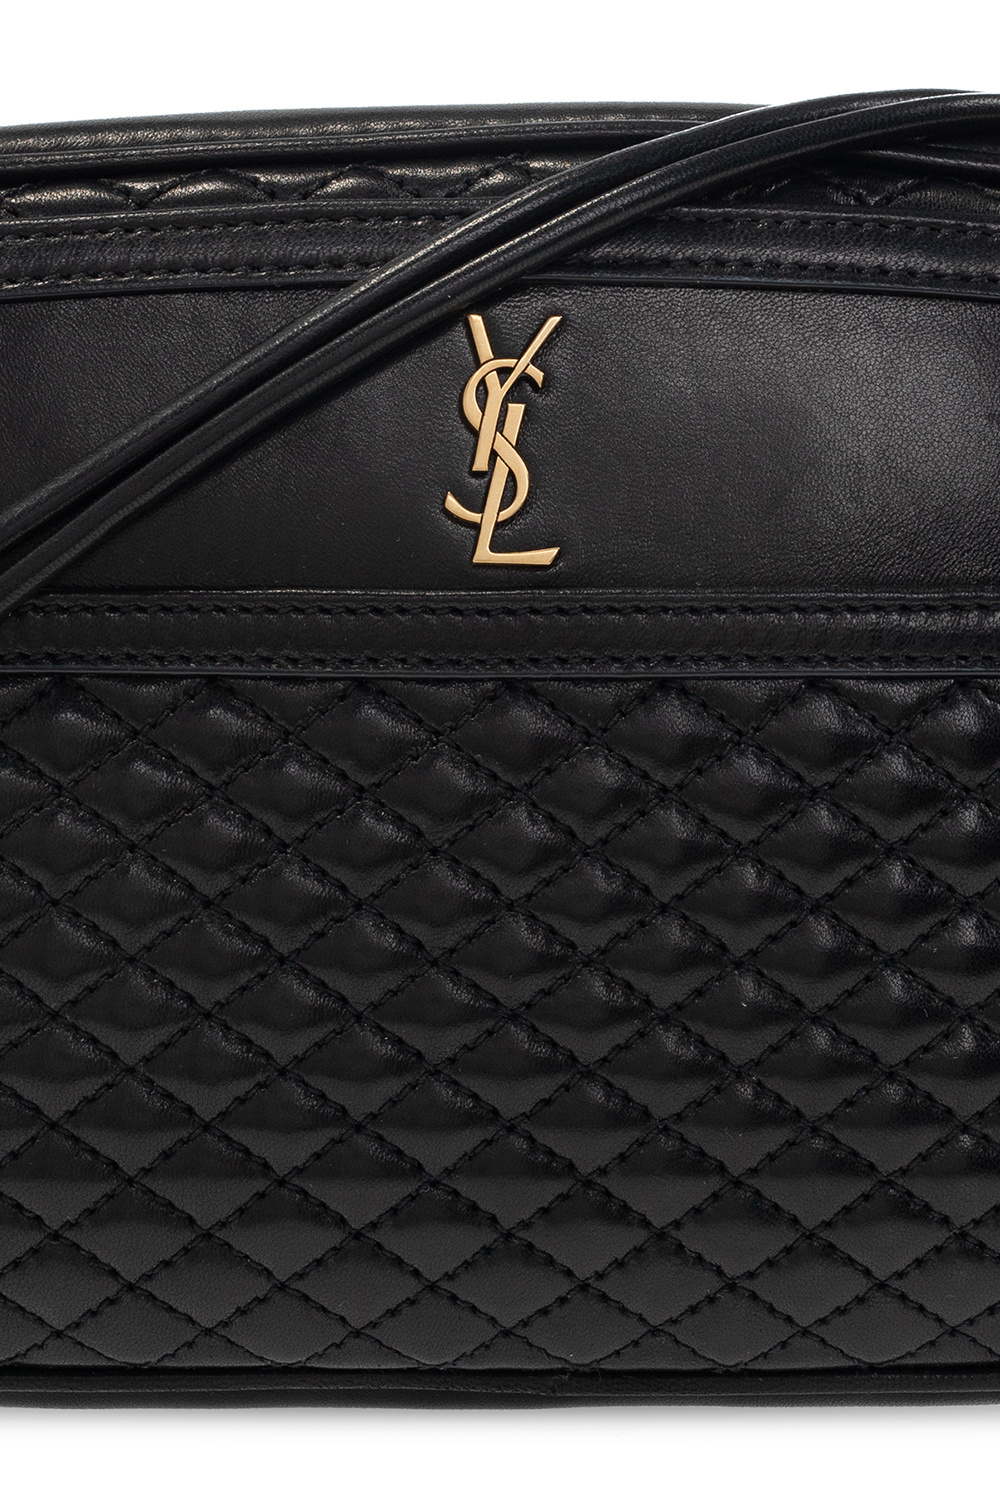 Saint Laurent 'Victoire' shoulder bag | Women's Bags | IetpShops